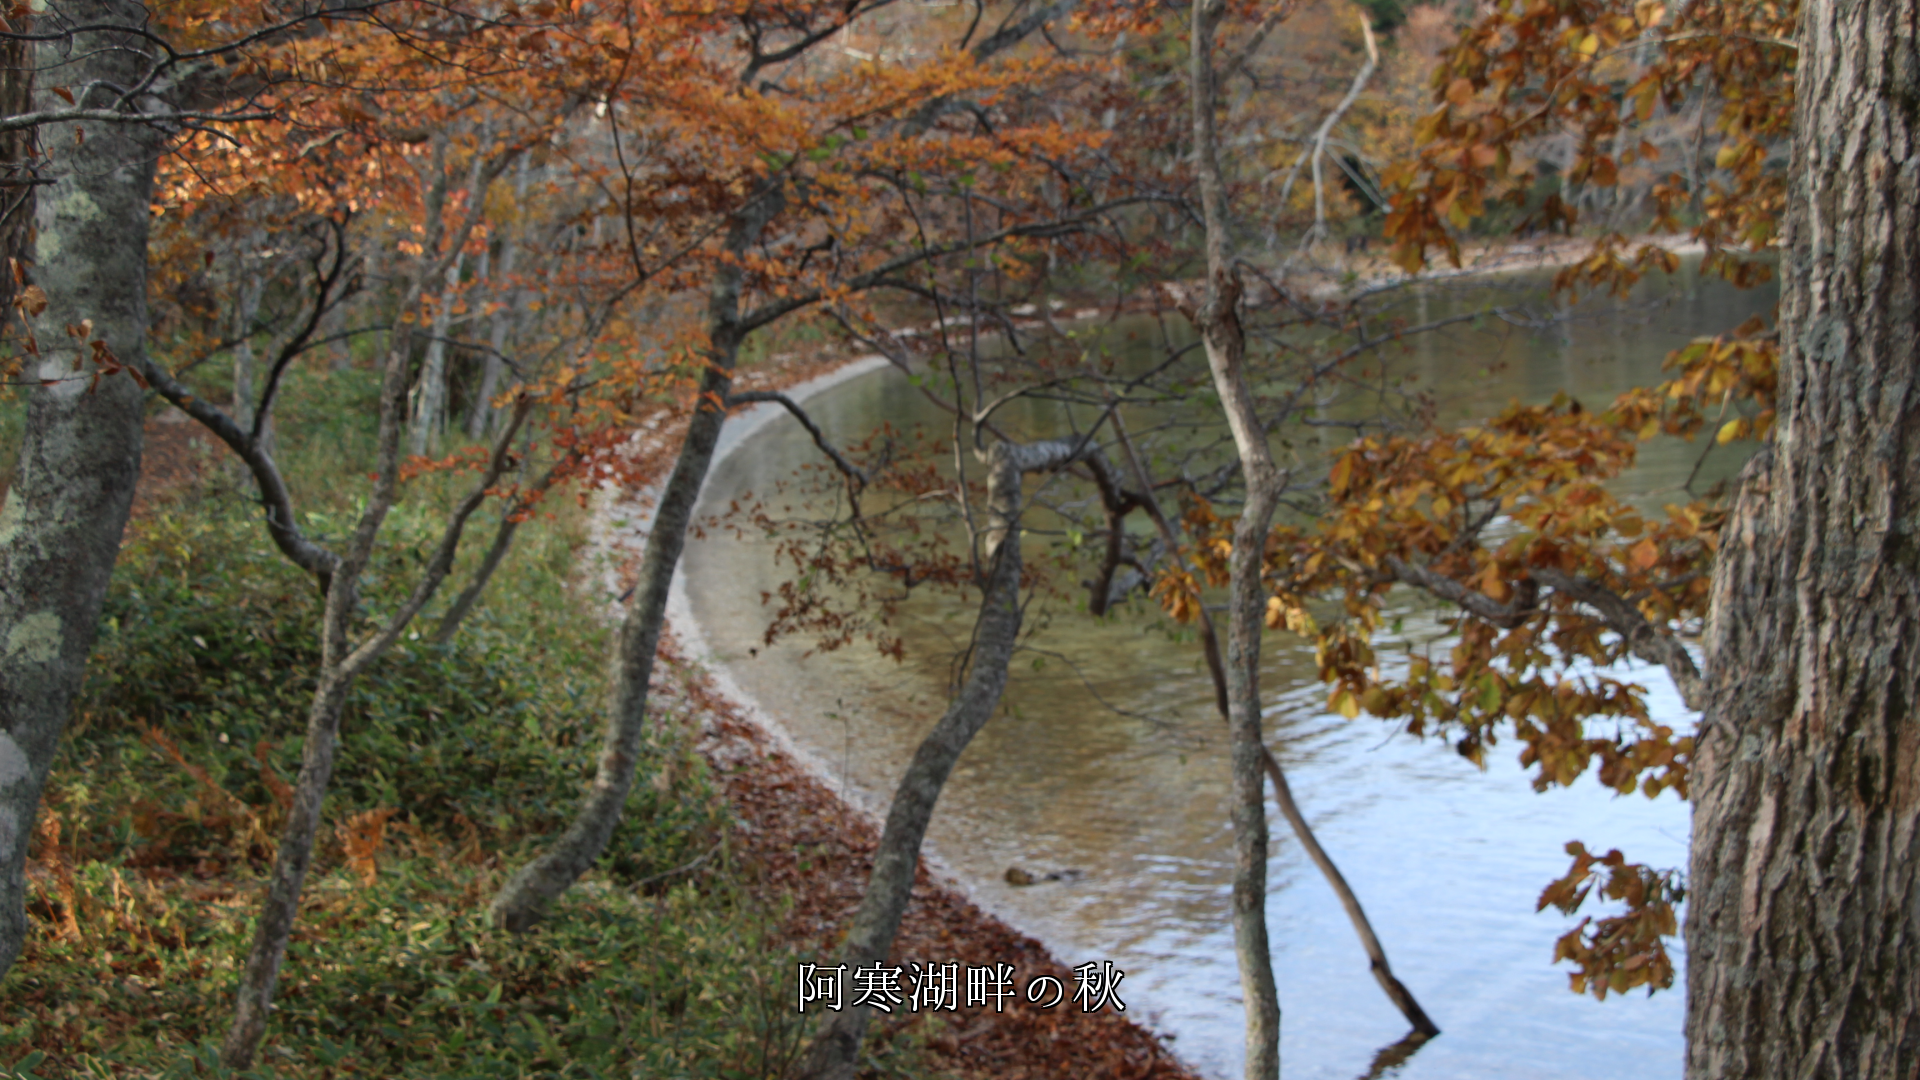 湖沼の秋模様、風に揺れると水面も揺れる　心のアルバムになる